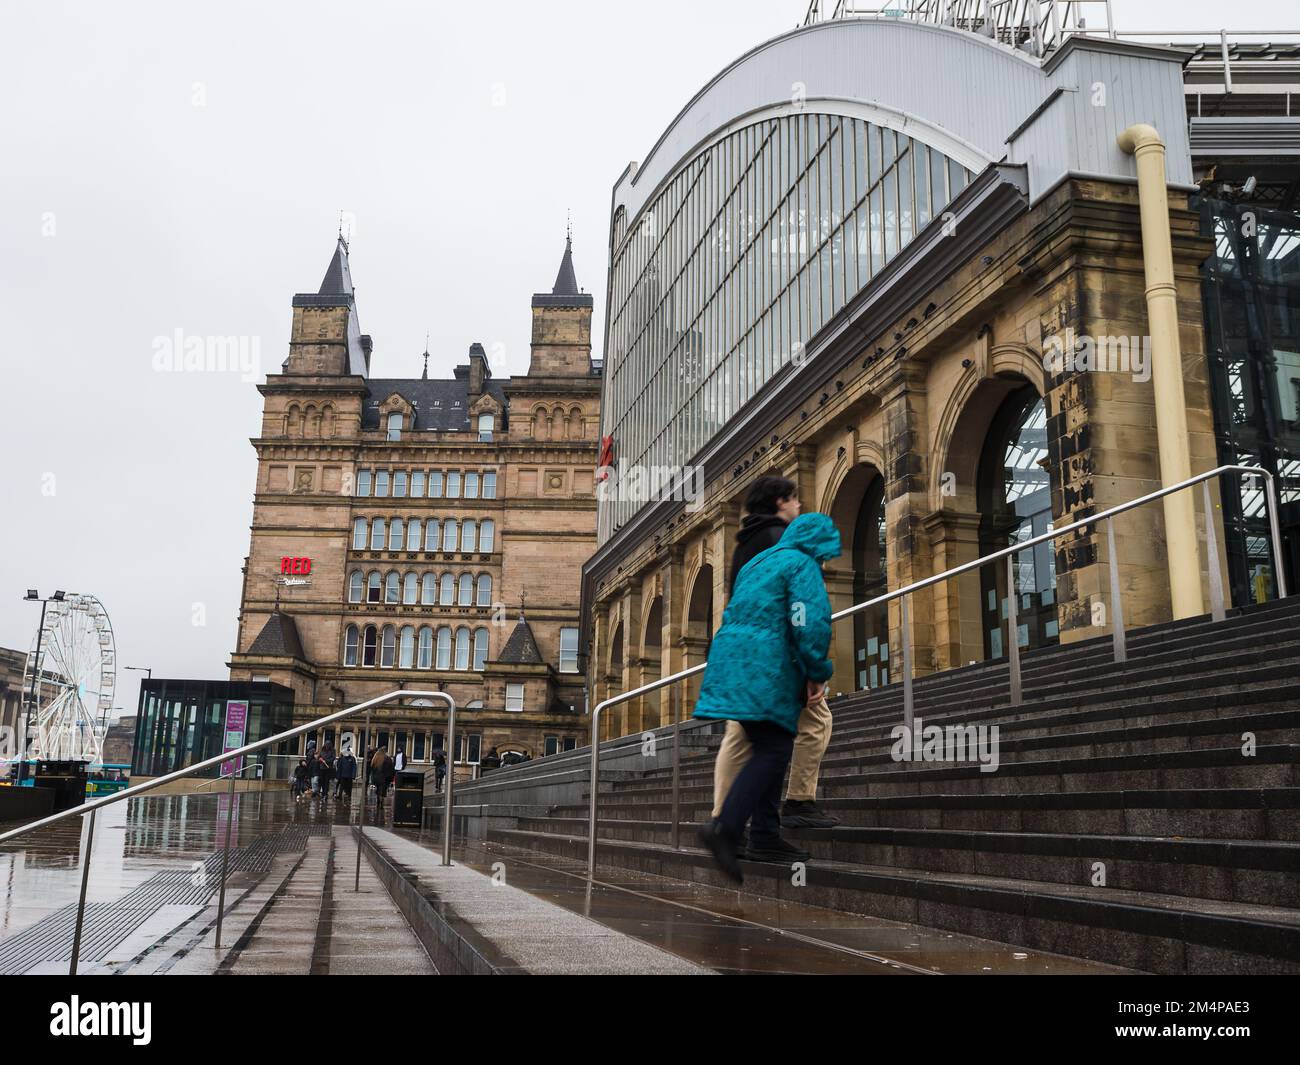 Un homme et une femme marchent sur les marches humides sous un ciel pluvieux vers la gare de Liverpool Lime Street en décembre 2022. Banque D'Images